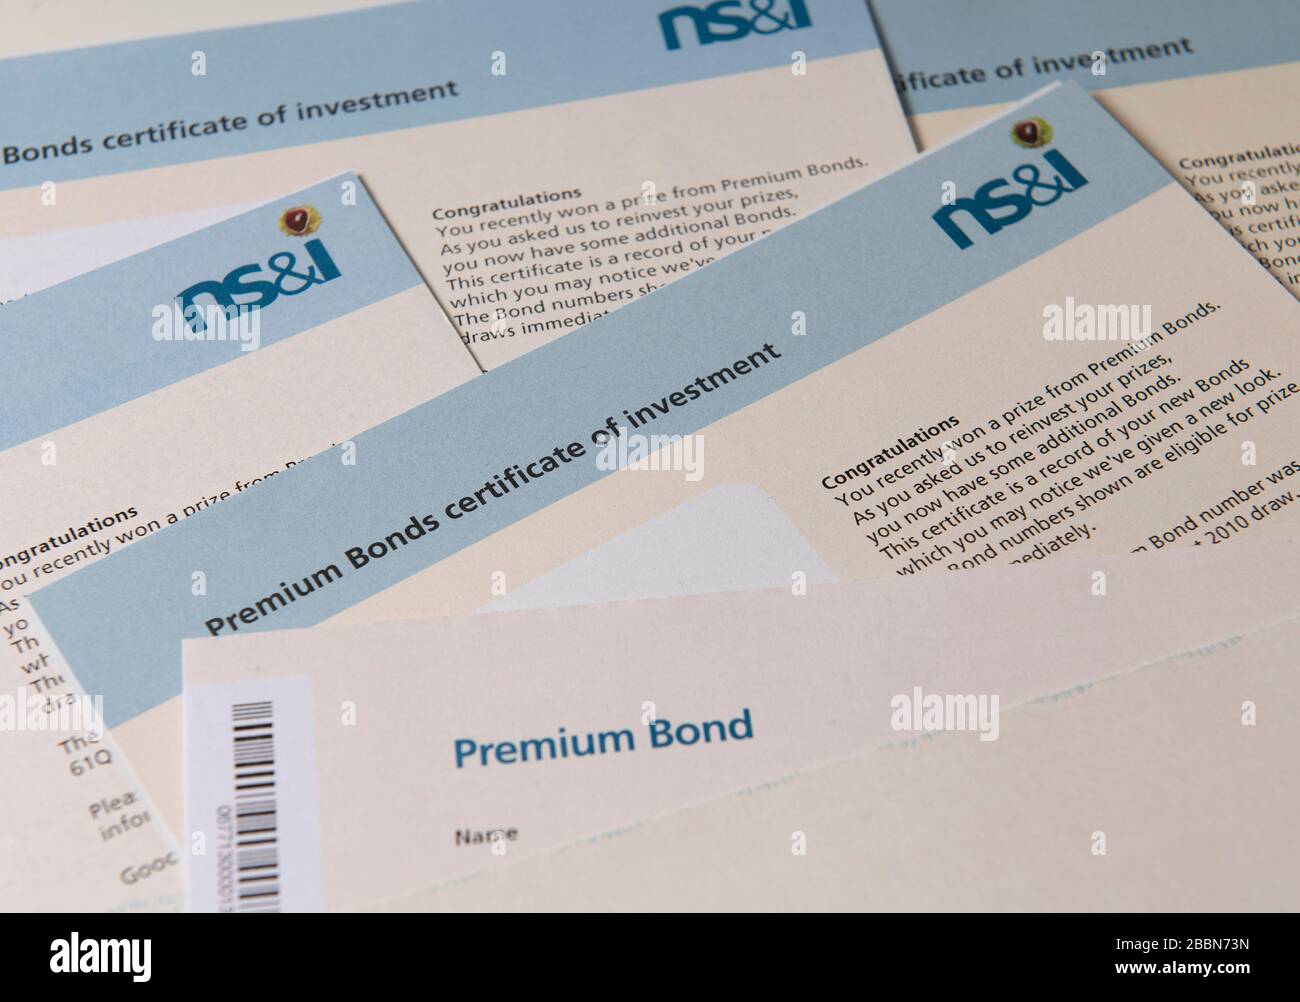 Gewinn von Premium Bonds, Reinvestitionszertifikaten von NS&I, Großbritannien Stockfoto